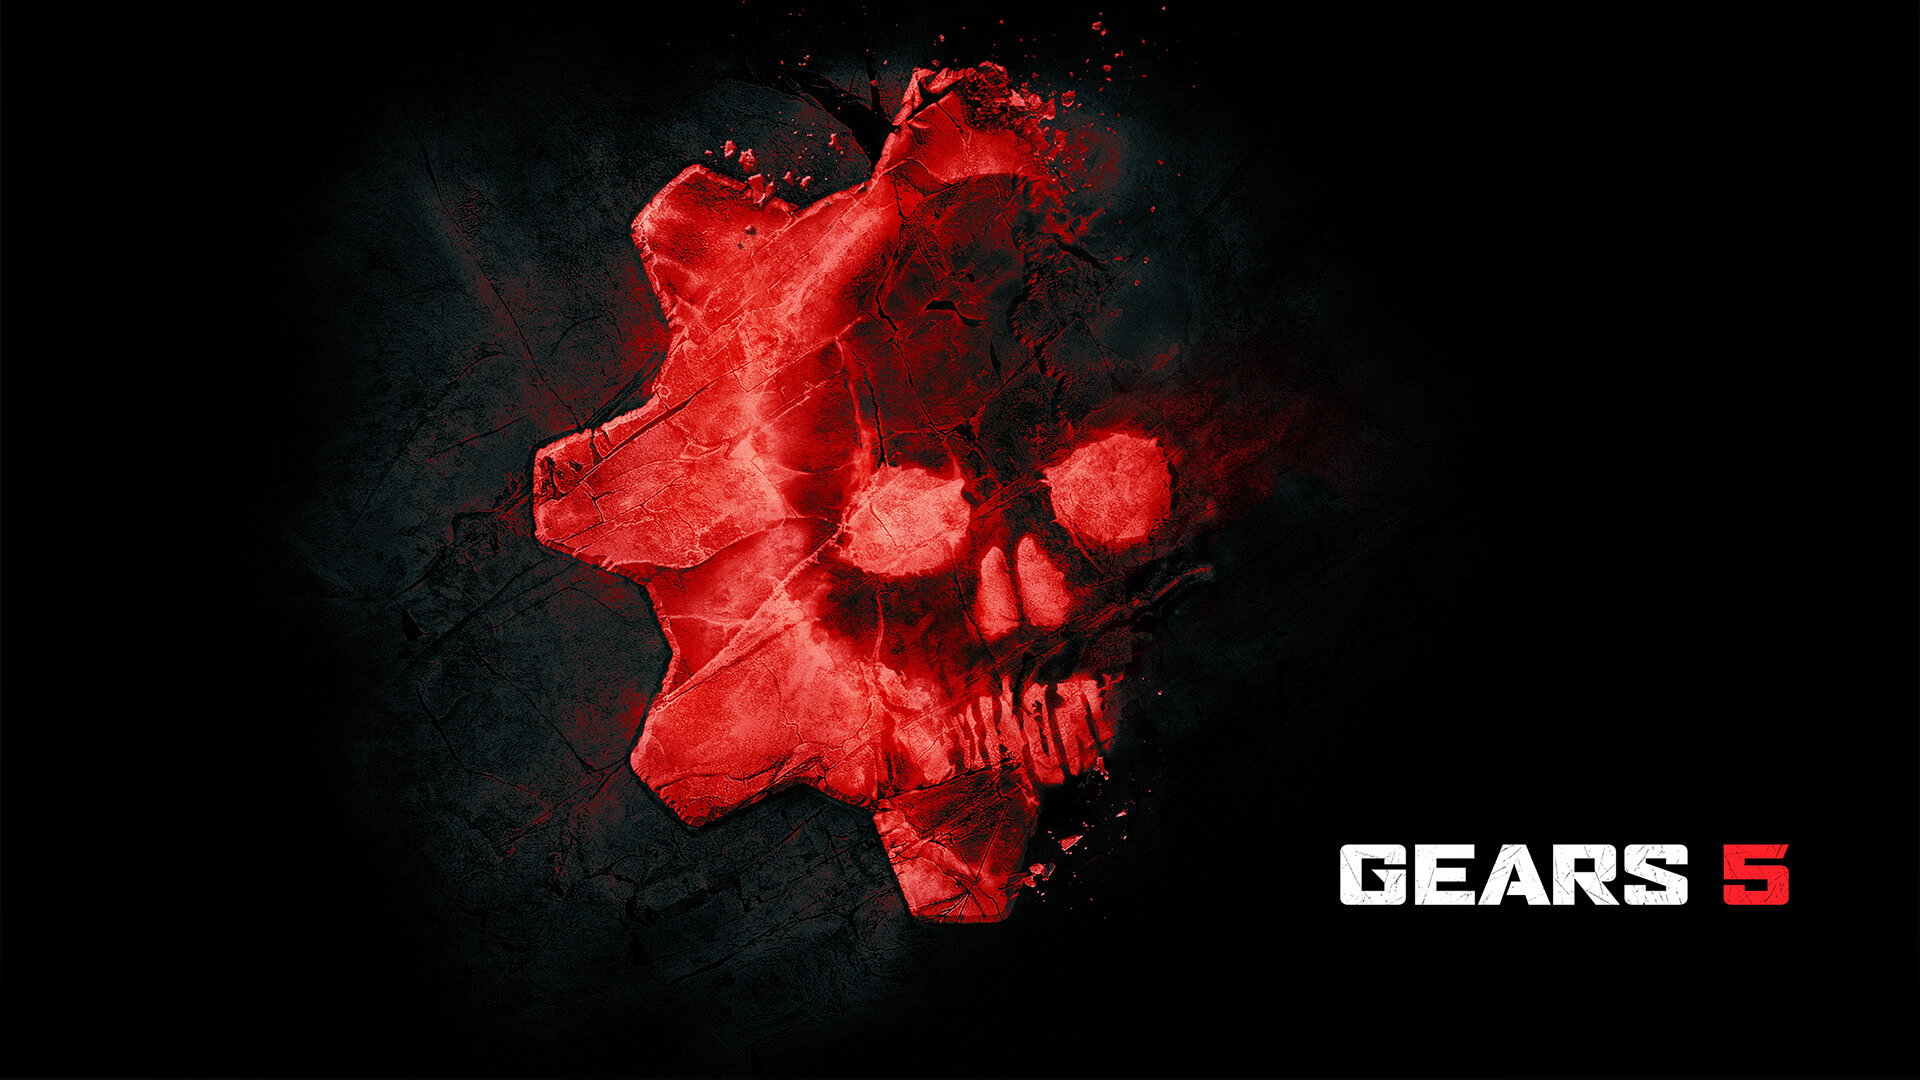 Gears 5 menerima "skor sempurna" dari situs yang mengevaluasi aksesibilitas di video game 5